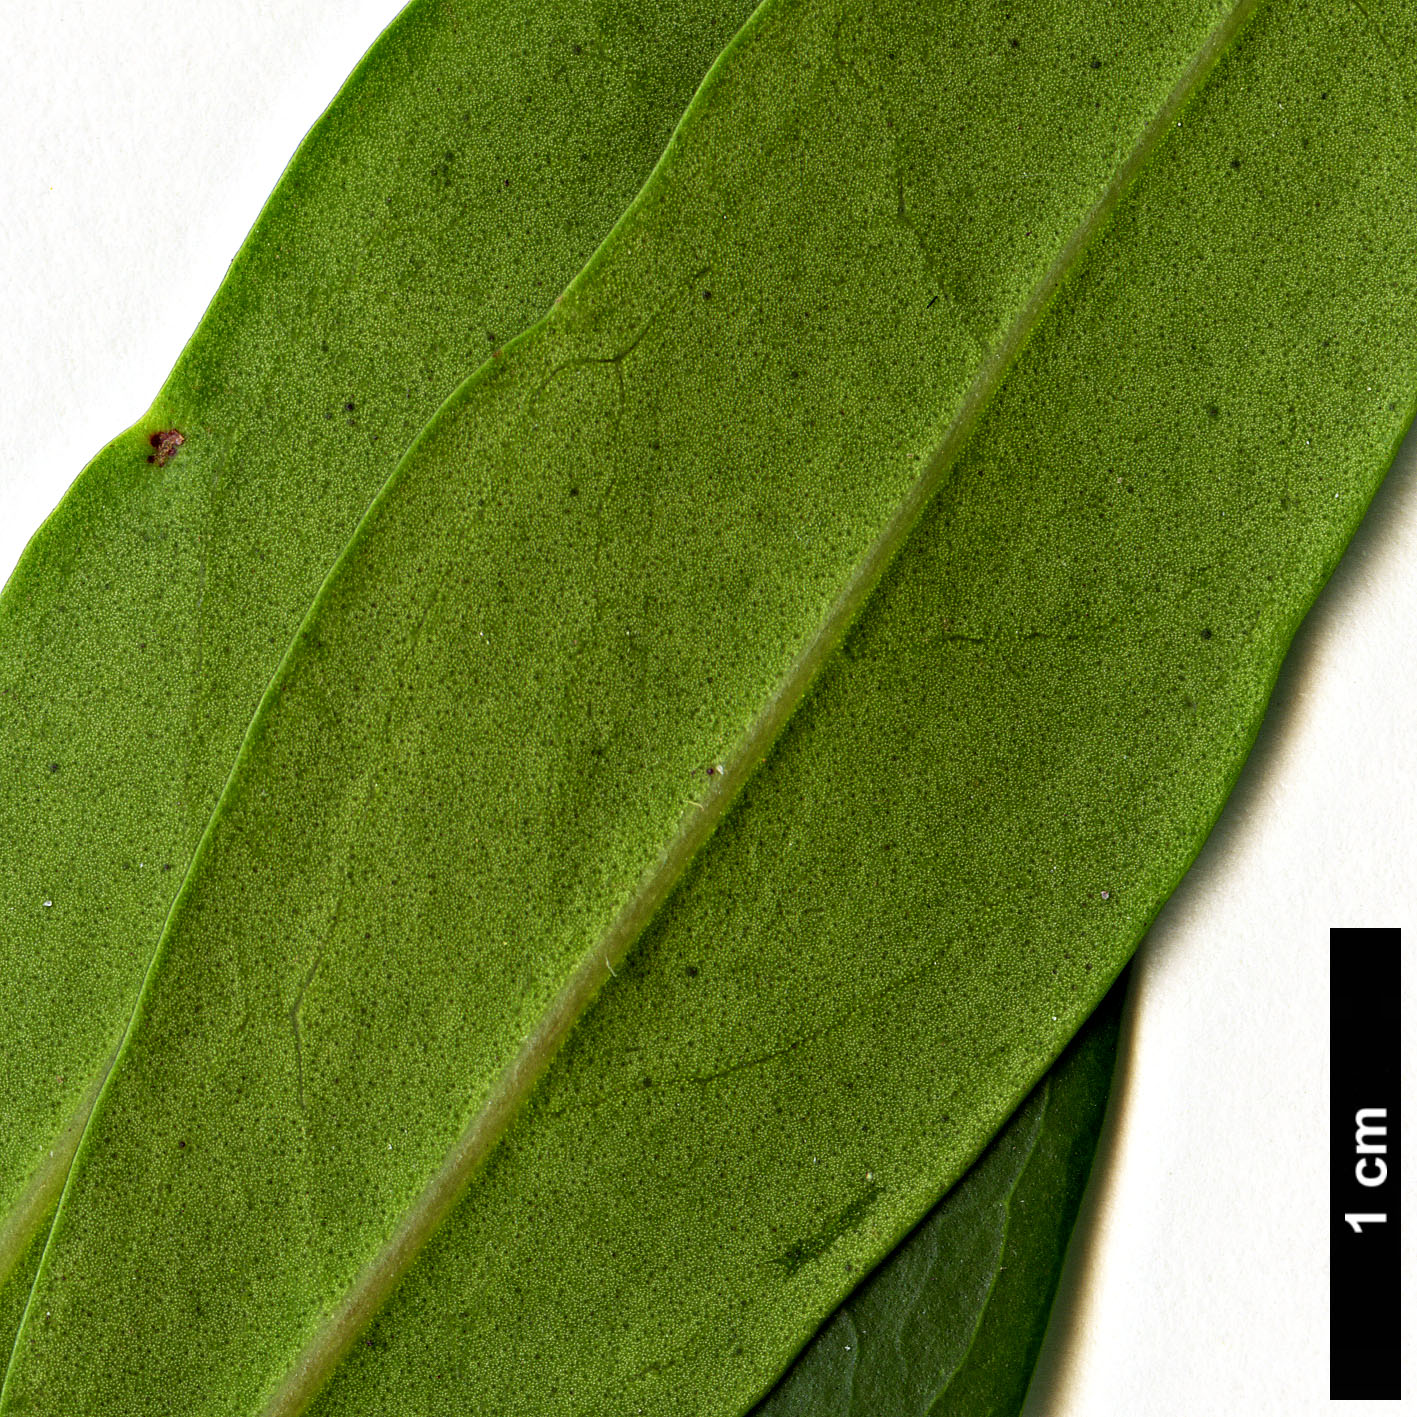 High resolution image: Family: Oleaceae - Genus: Nestegis - Taxon: lanceolata